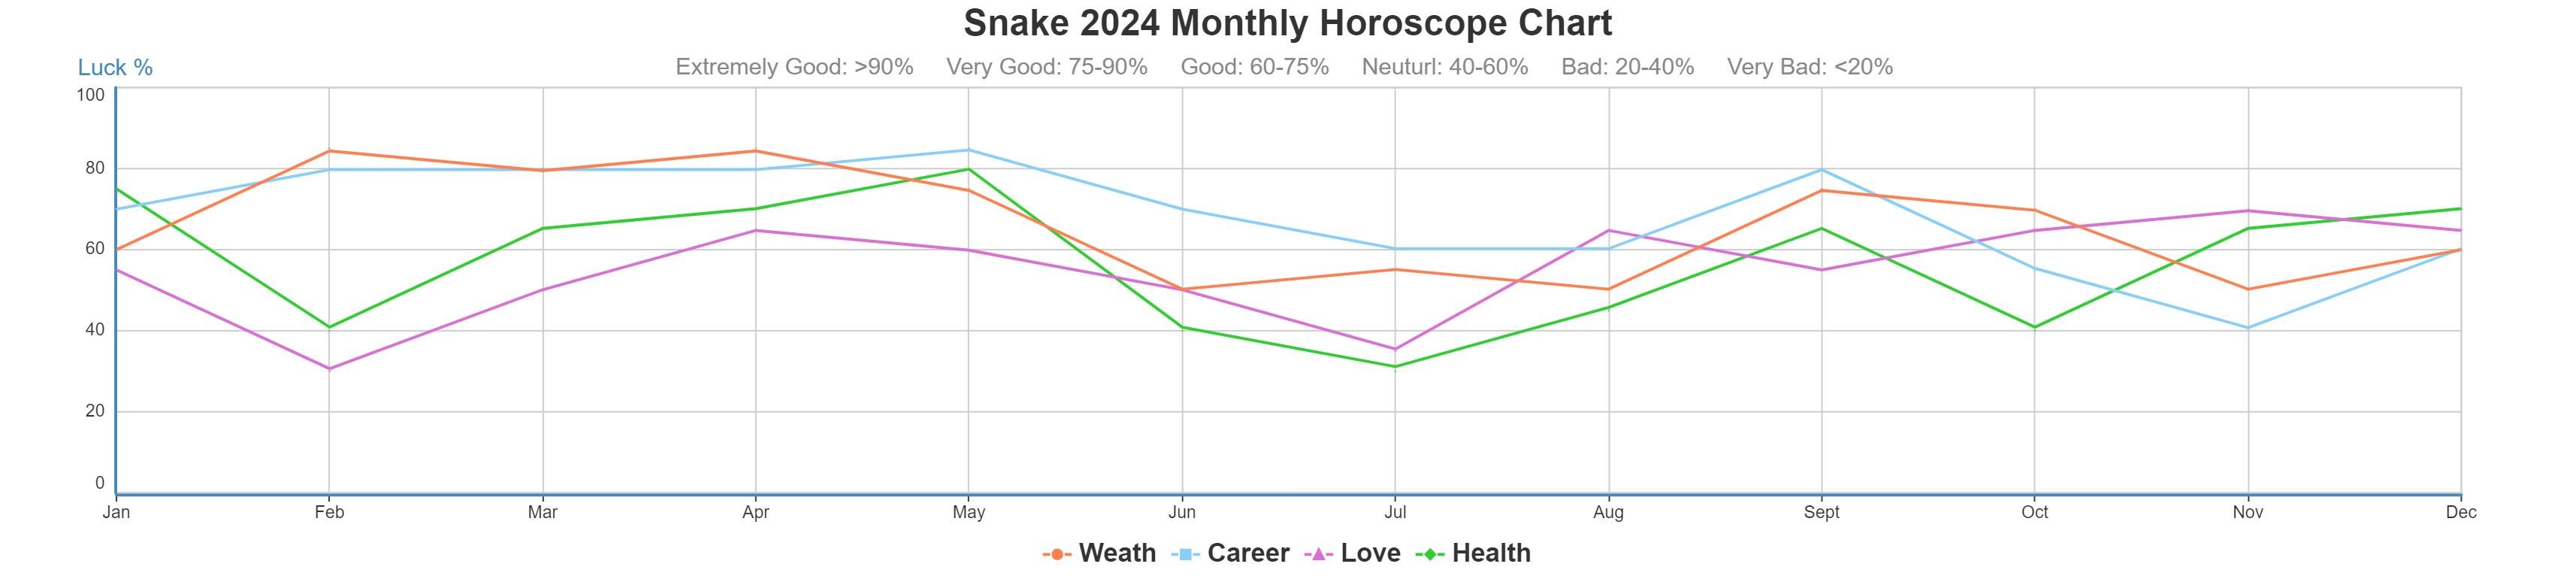 Snake 2024 monthly horoscope